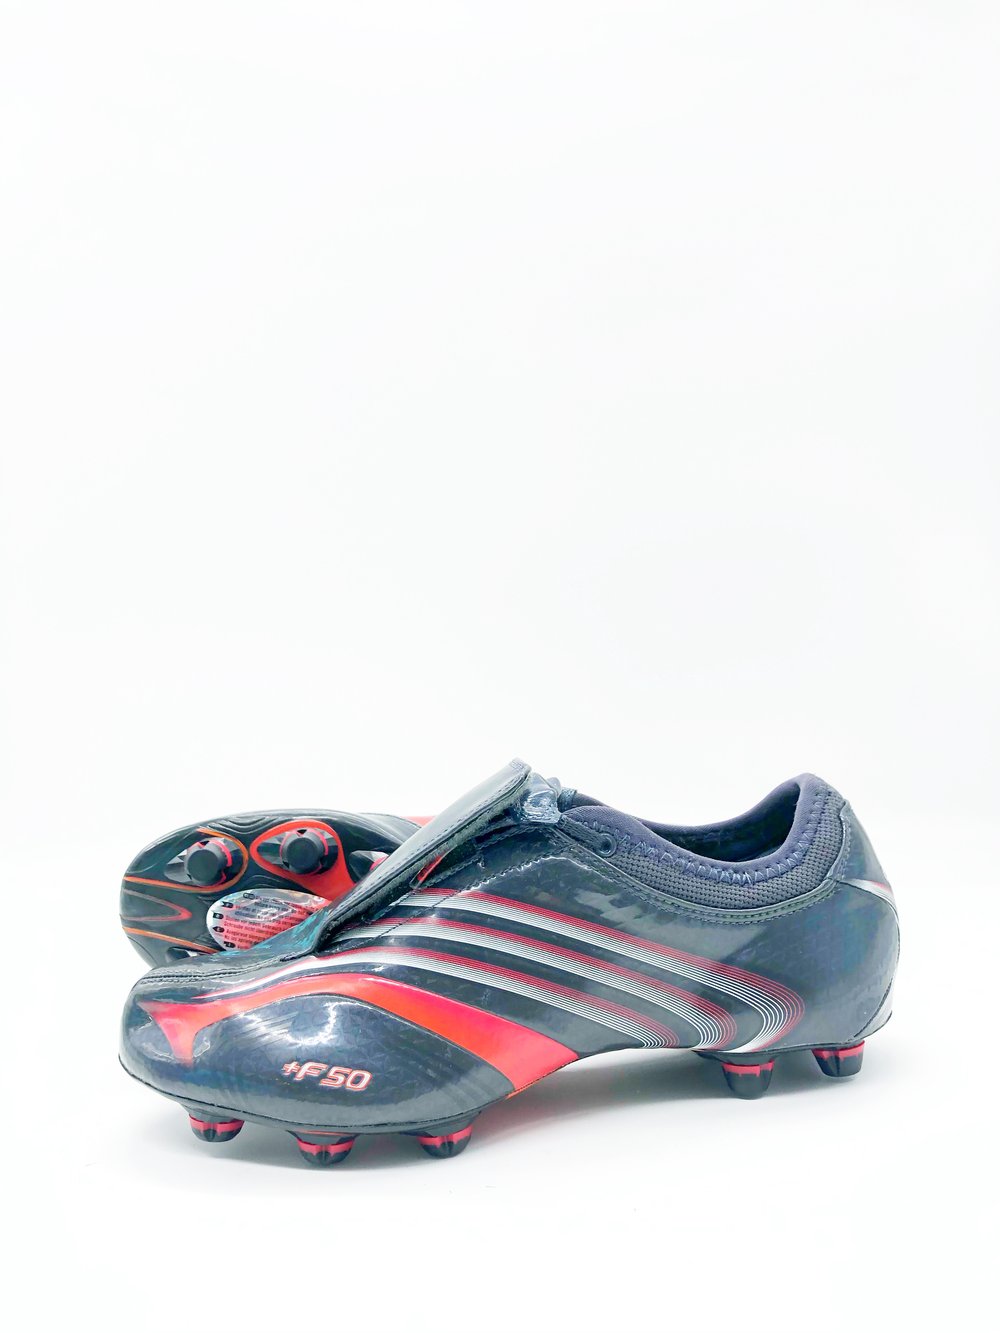 Tbtclassicfootballboots — Adidas F50.6 HG